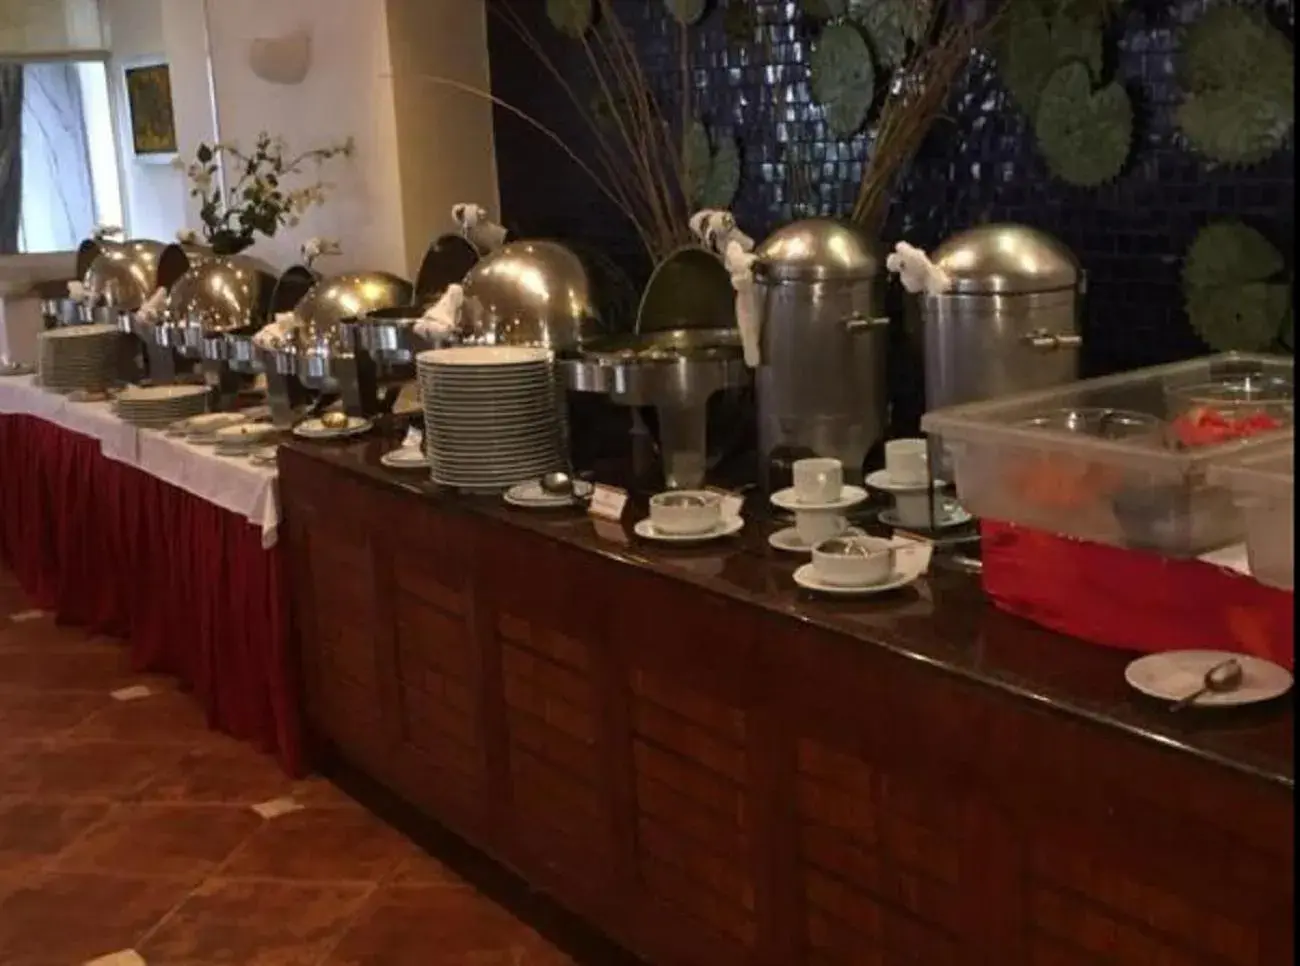 Buffet breakfast in Hotel Terranova